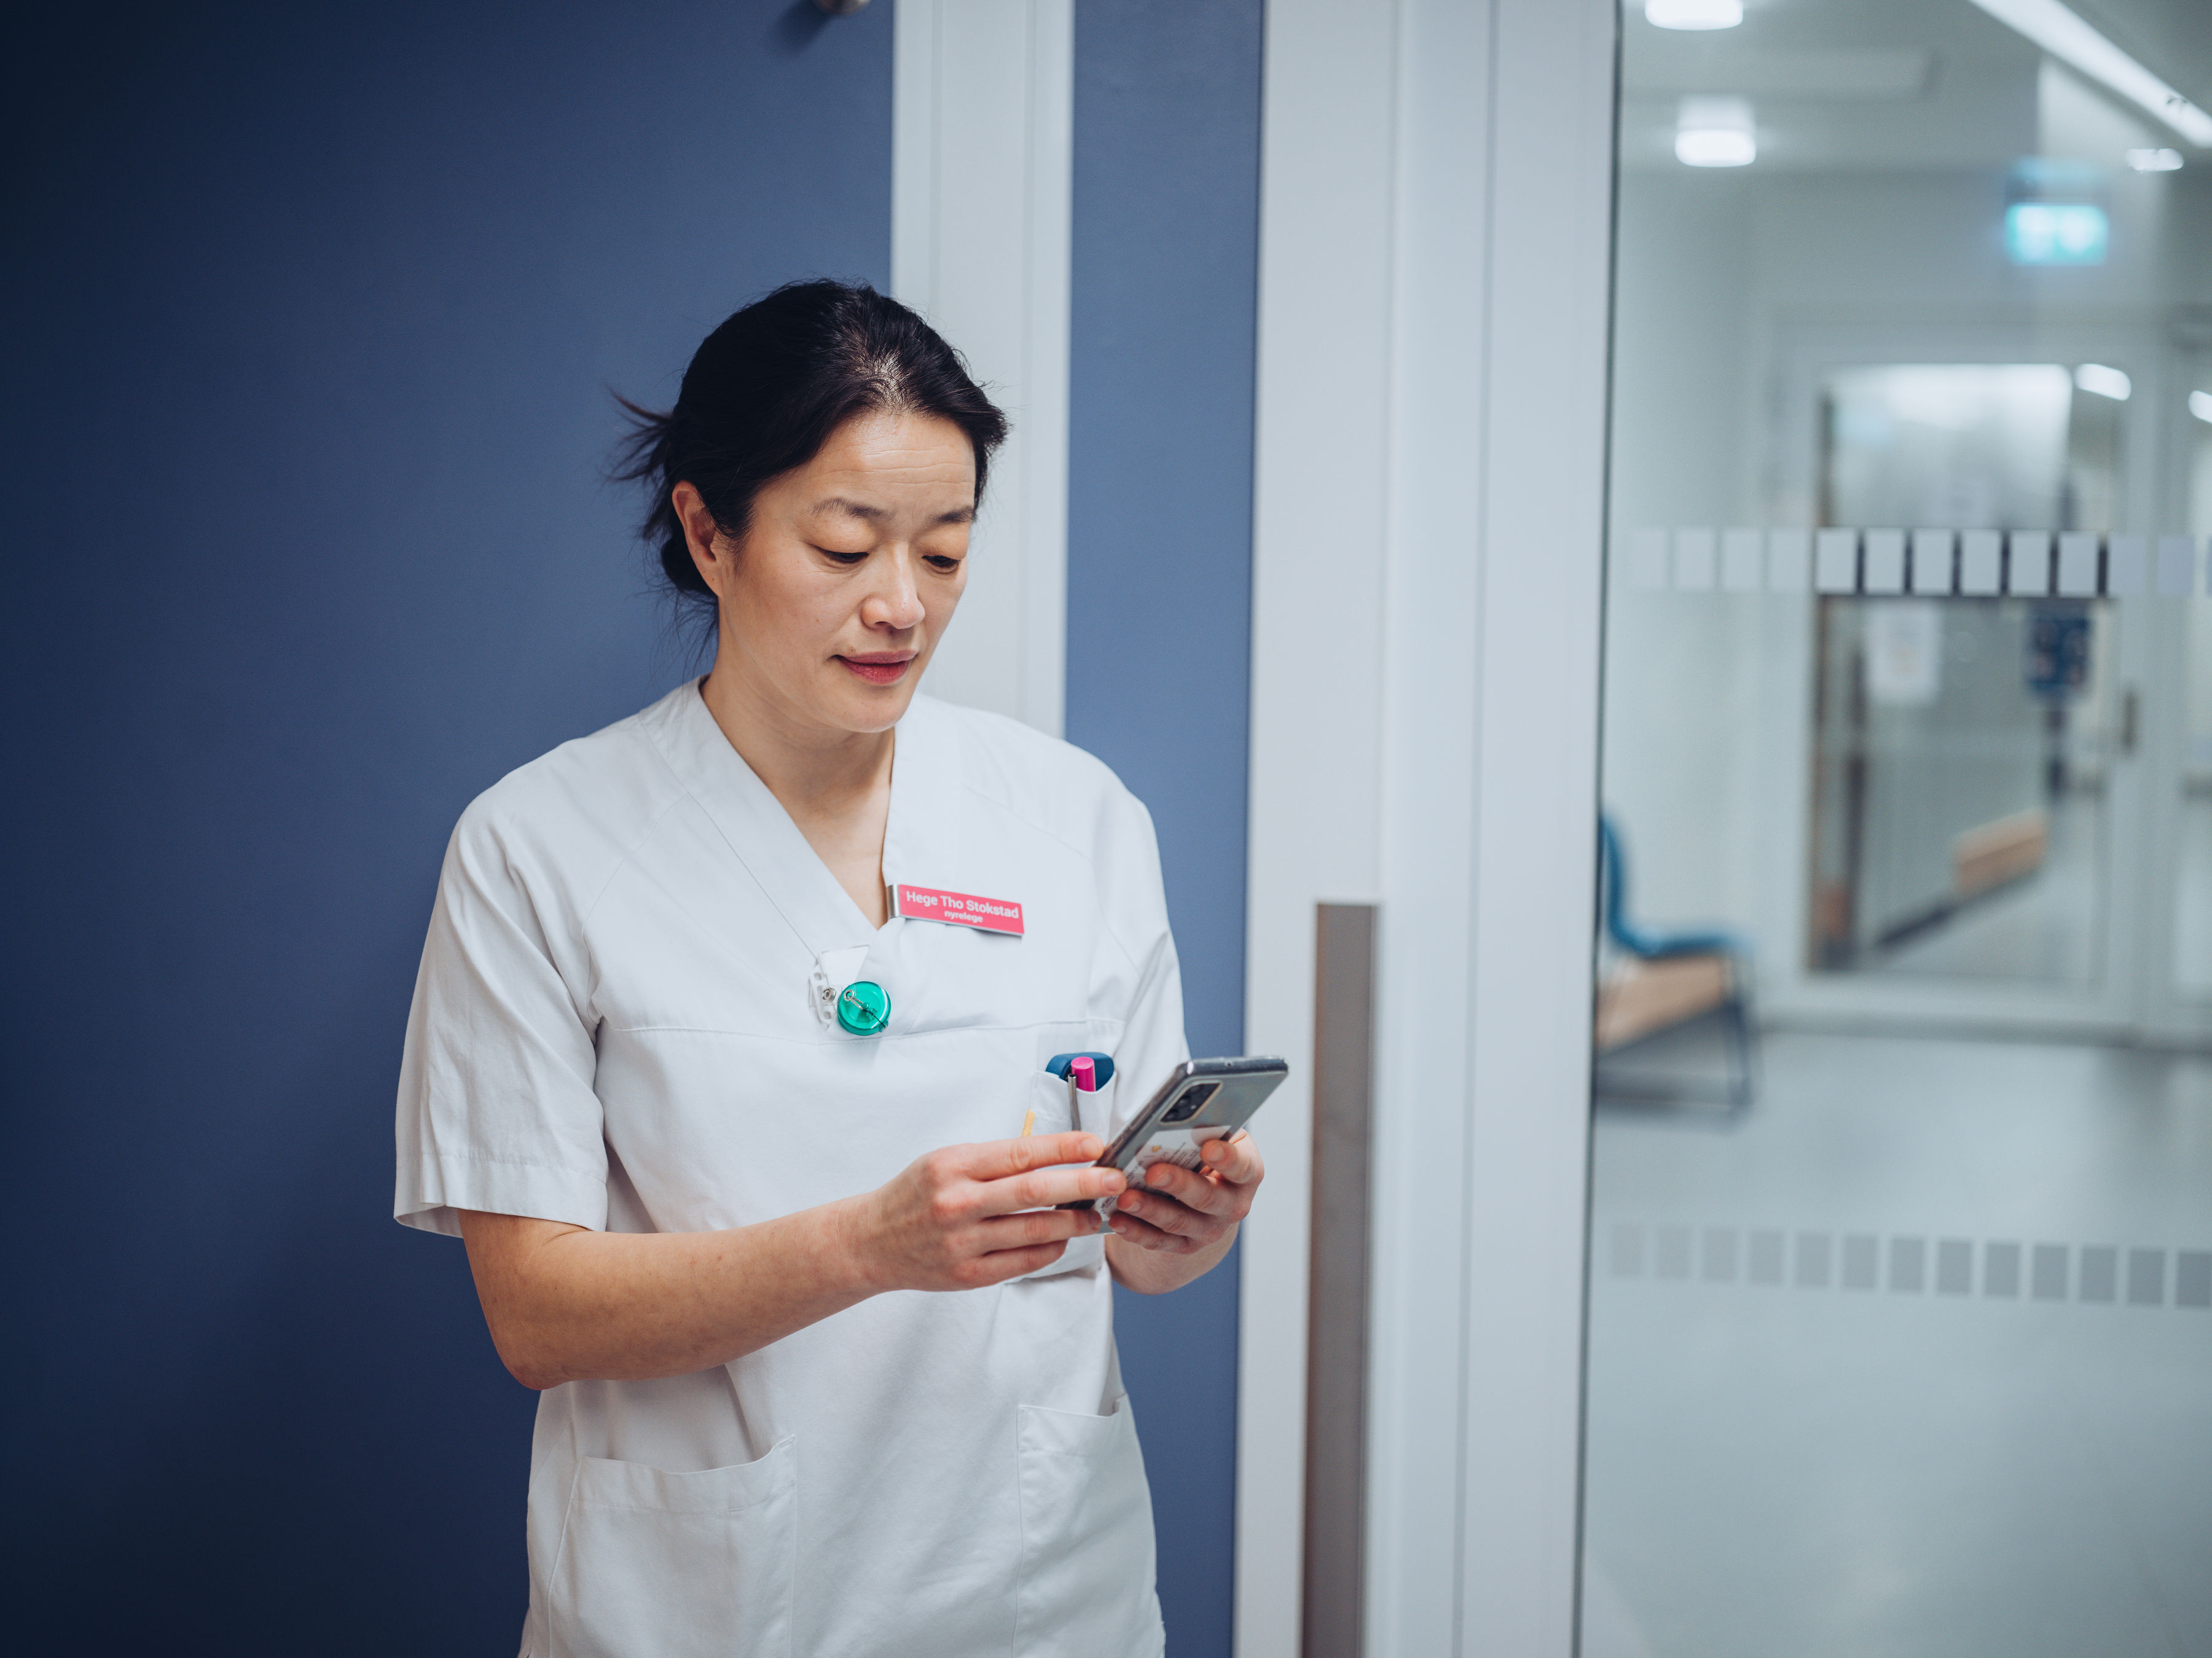 Sykepleier ser på mobil